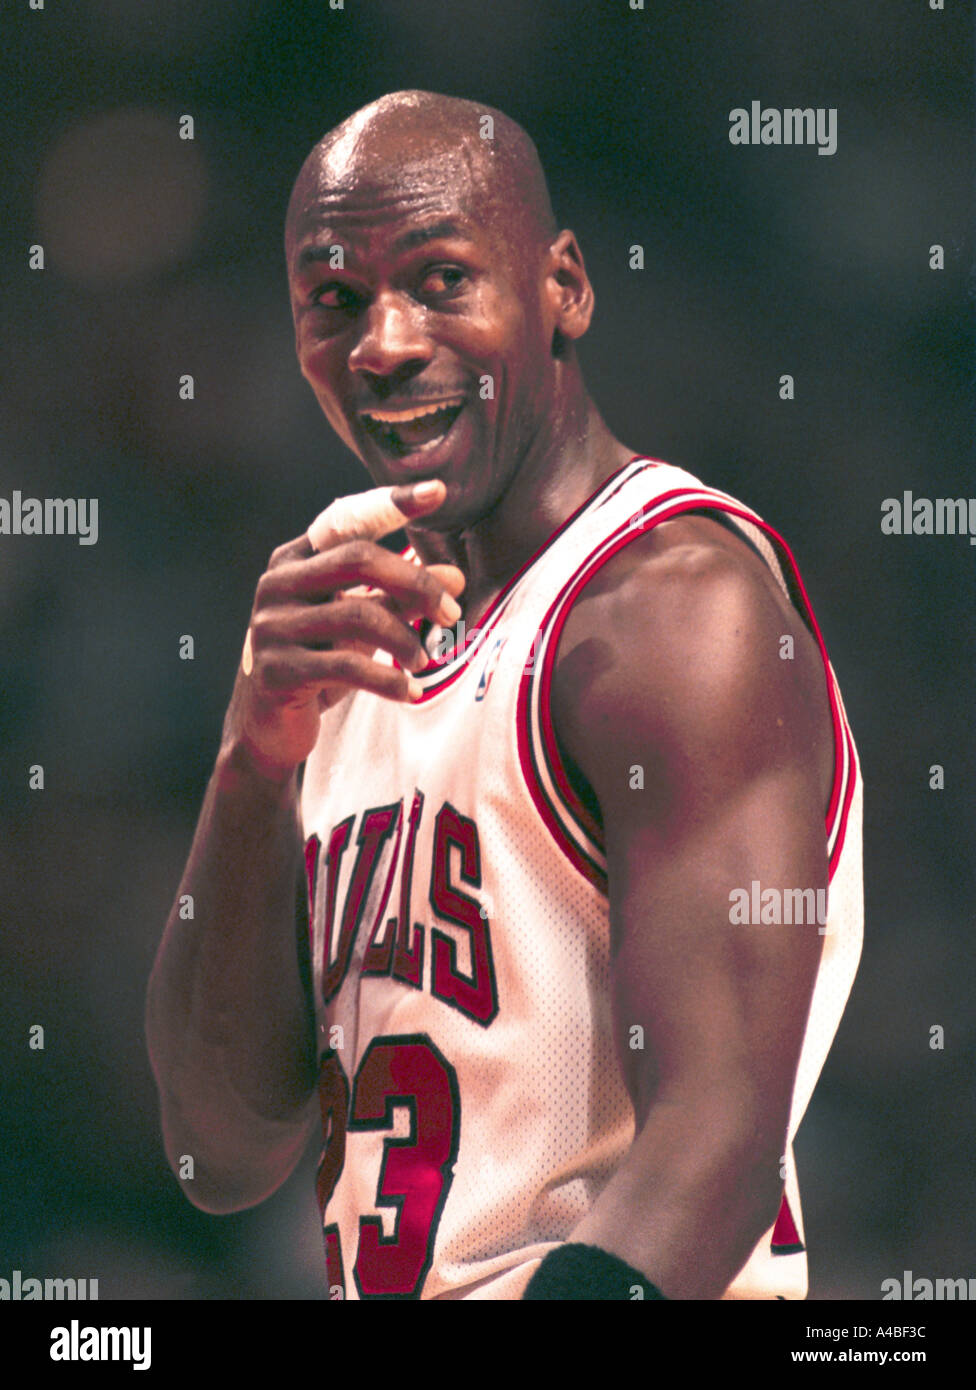 Chicago Bulls et NBA superstar Michael Jordan sourit au cours de jeu d'action en 1995 Banque D'Images